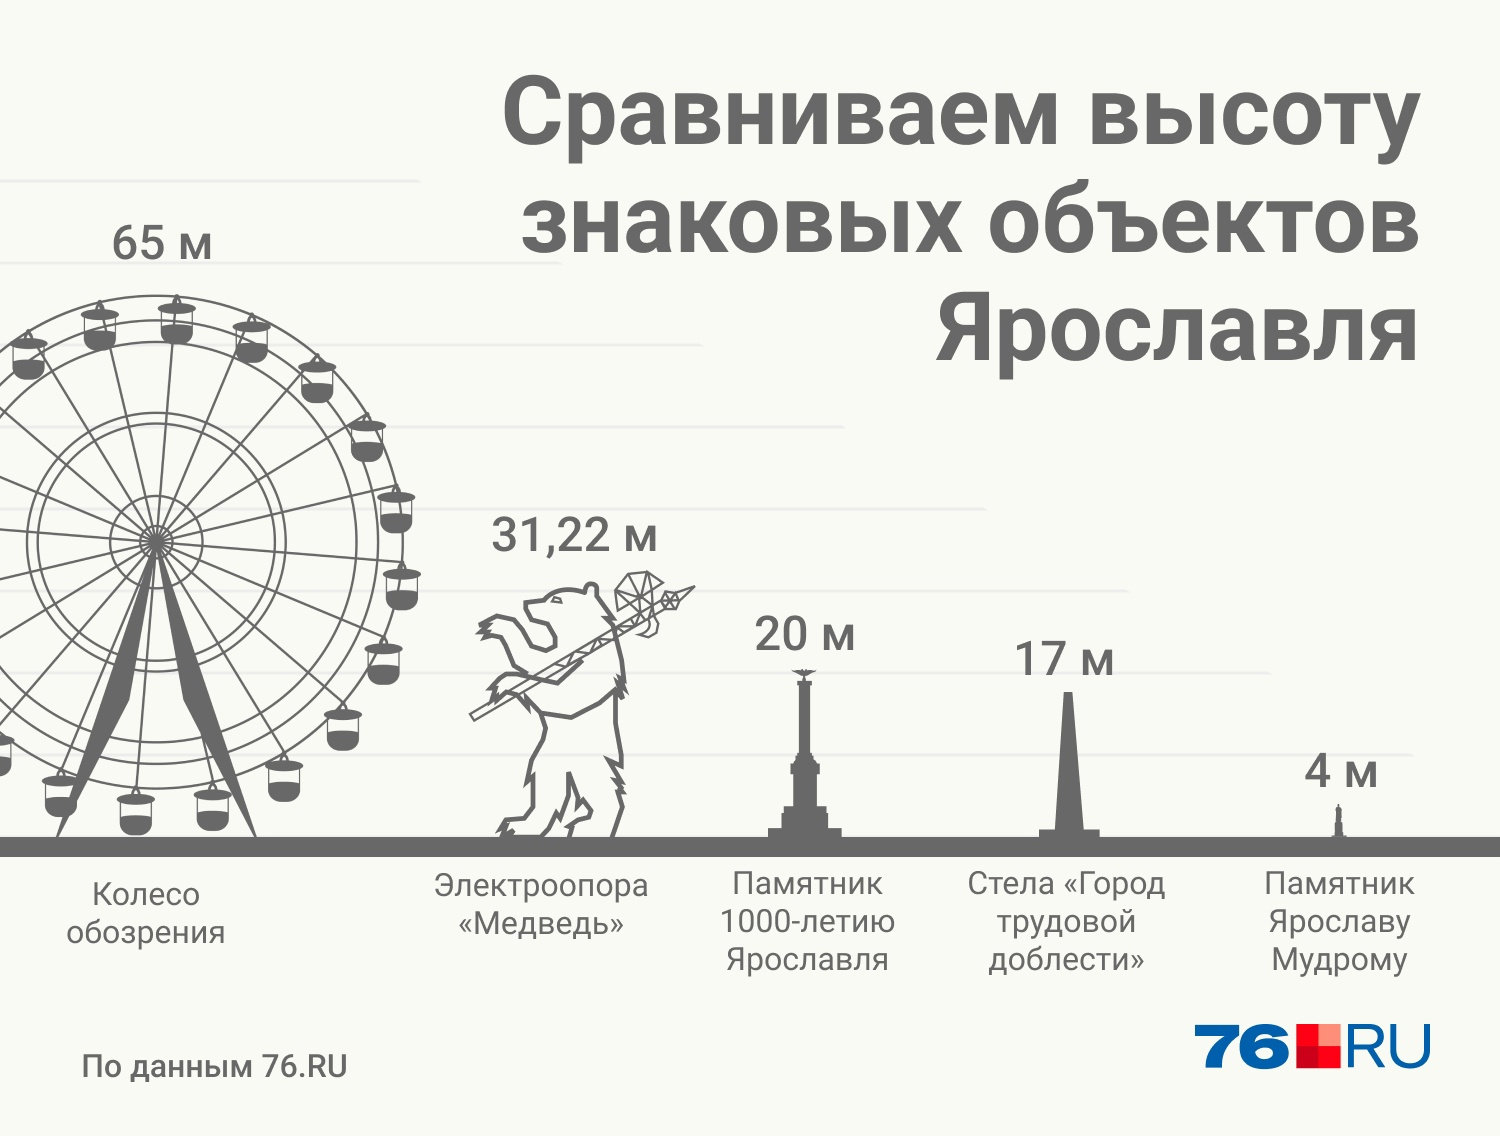 Высота ЛЭП в сравнении с другими ярославскими громадинами